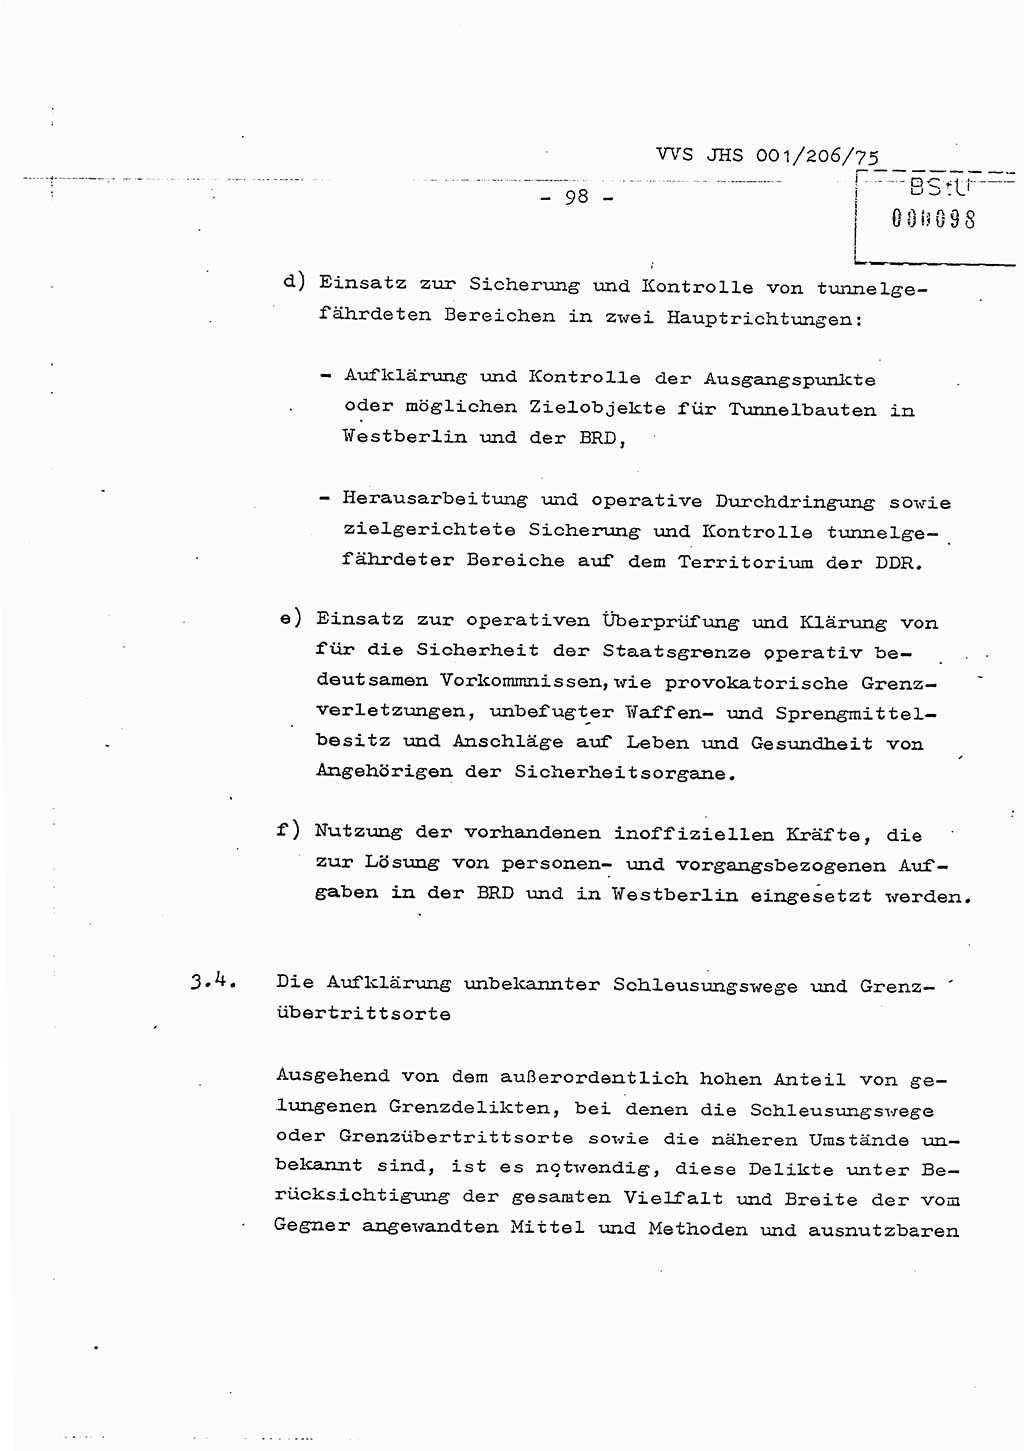 Dissertation Generalmajor Manfred Hummitzsch (Leiter der BV Leipzig), Generalmajor Heinz Fiedler (HA Ⅵ), Oberst Rolf Fister (HA Ⅸ), Ministerium für Staatssicherheit (MfS) [Deutsche Demokratische Republik (DDR)], Juristische Hochschule (JHS), Vertrauliche Verschlußsache (VVS) 001-206/75, Potsdam 1975, Seite 98 (Diss. MfS DDR JHS VVS 001-206/75 1975, S. 98)